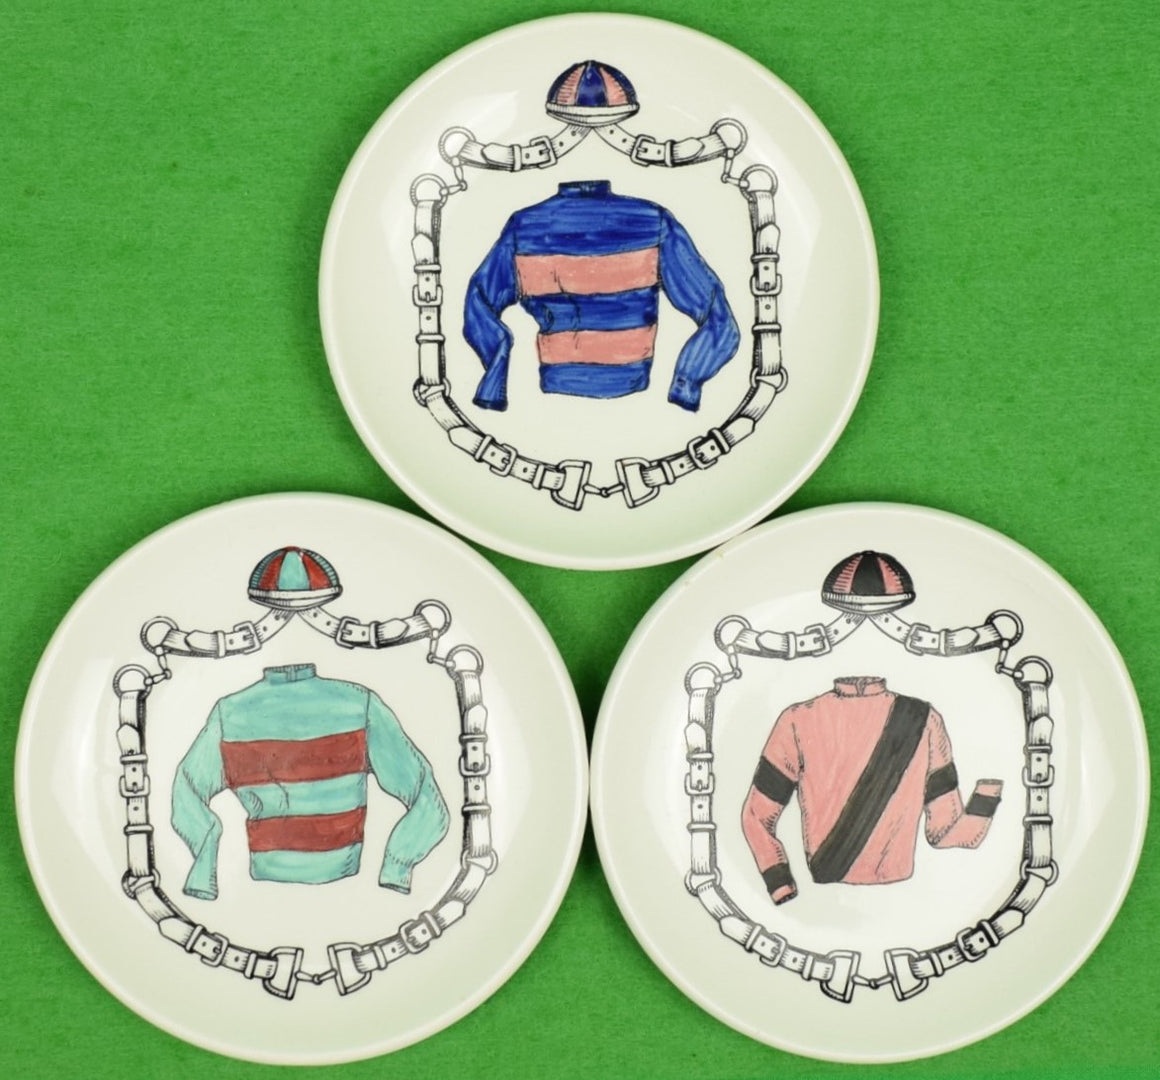 "Set of 3 Jockey Silks Ceramic Coasters Made in Italy"